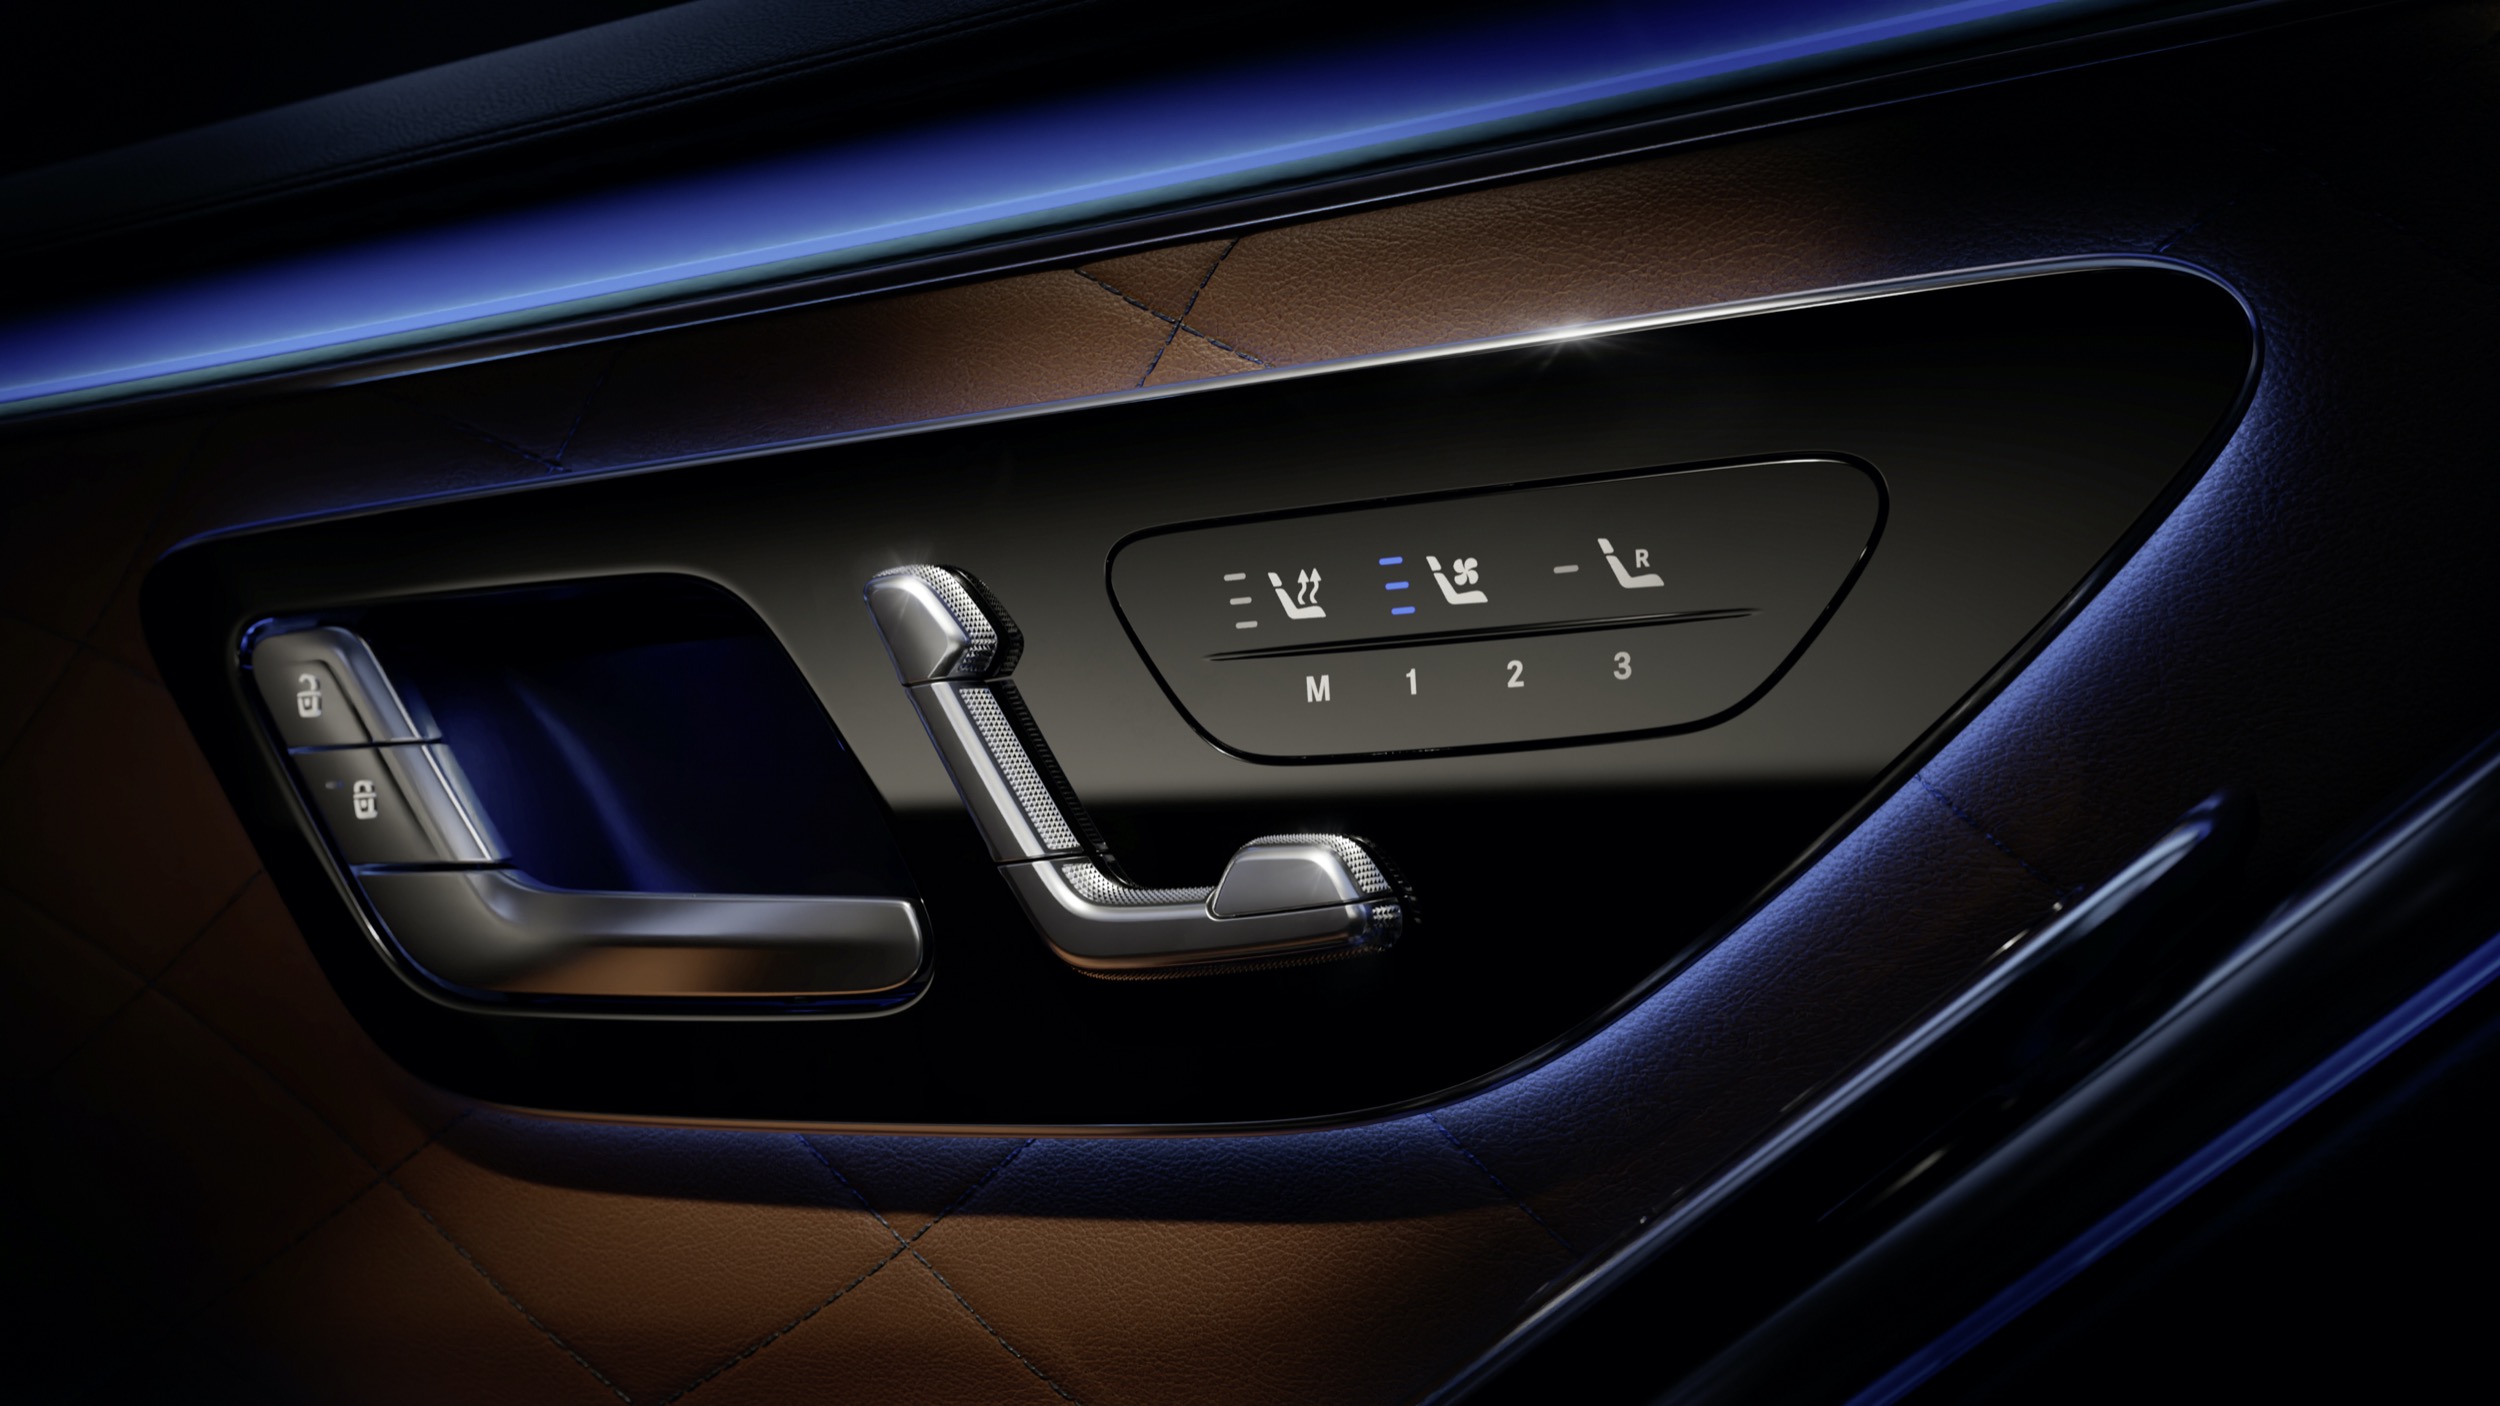 2021-Mercedes-Benz-S-Class-interior-10.jpg